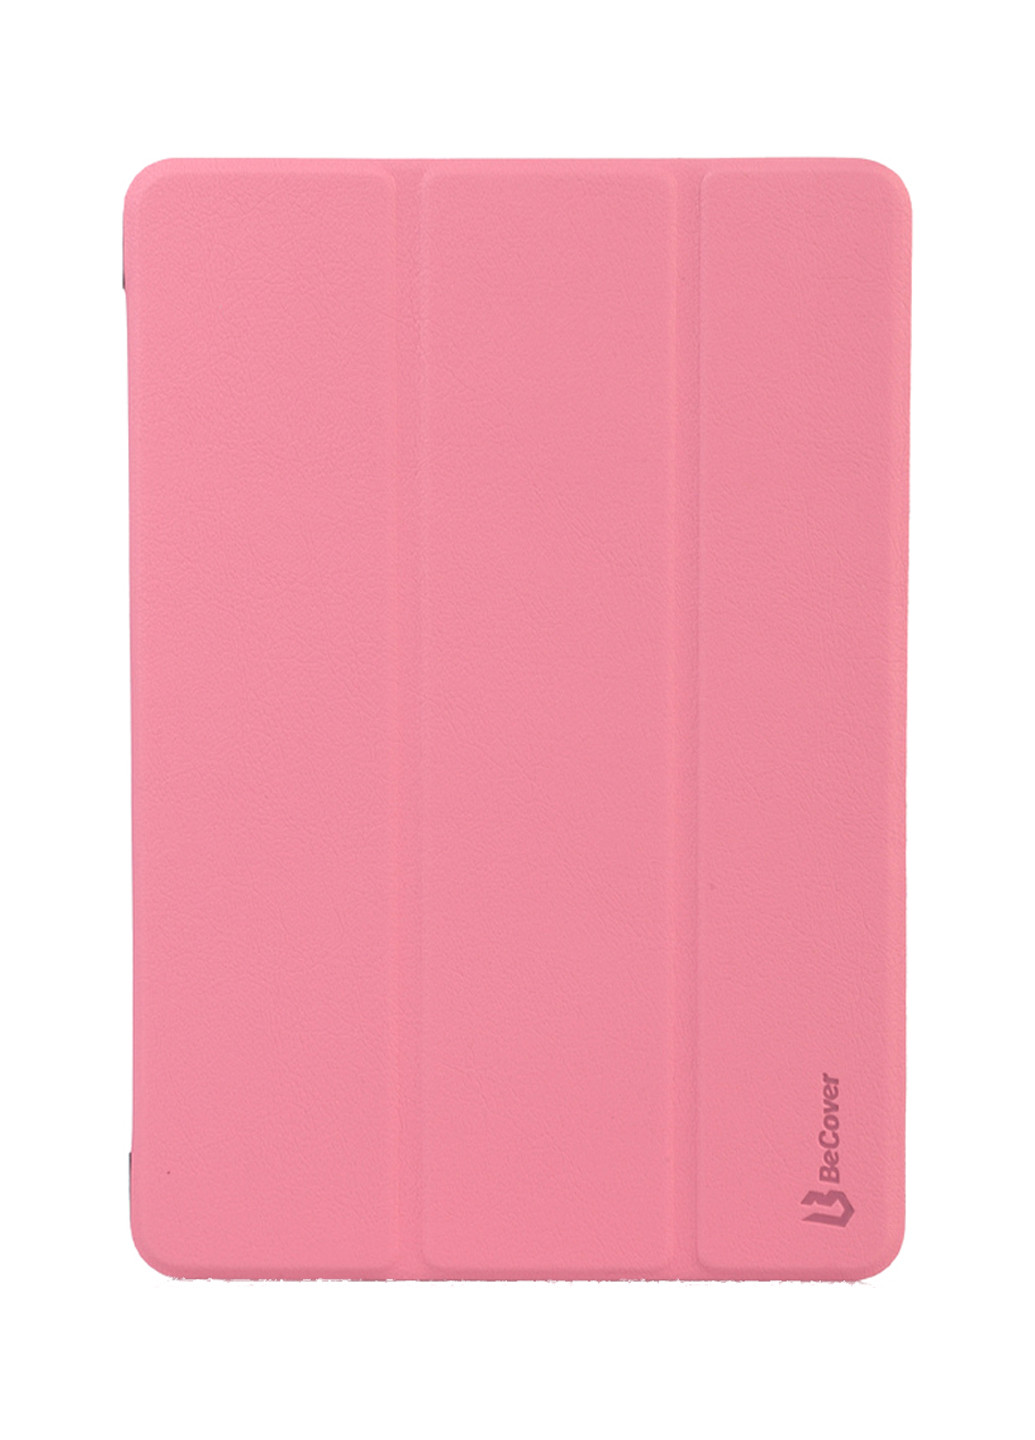 Чохол-книжка з кріпленням Apple Pencil для Apple iPad 10.2 2019 Pink (704151) BeCover с креплением apple pencil для apple ipad 10.2 2019 pink (704151) (154454086)